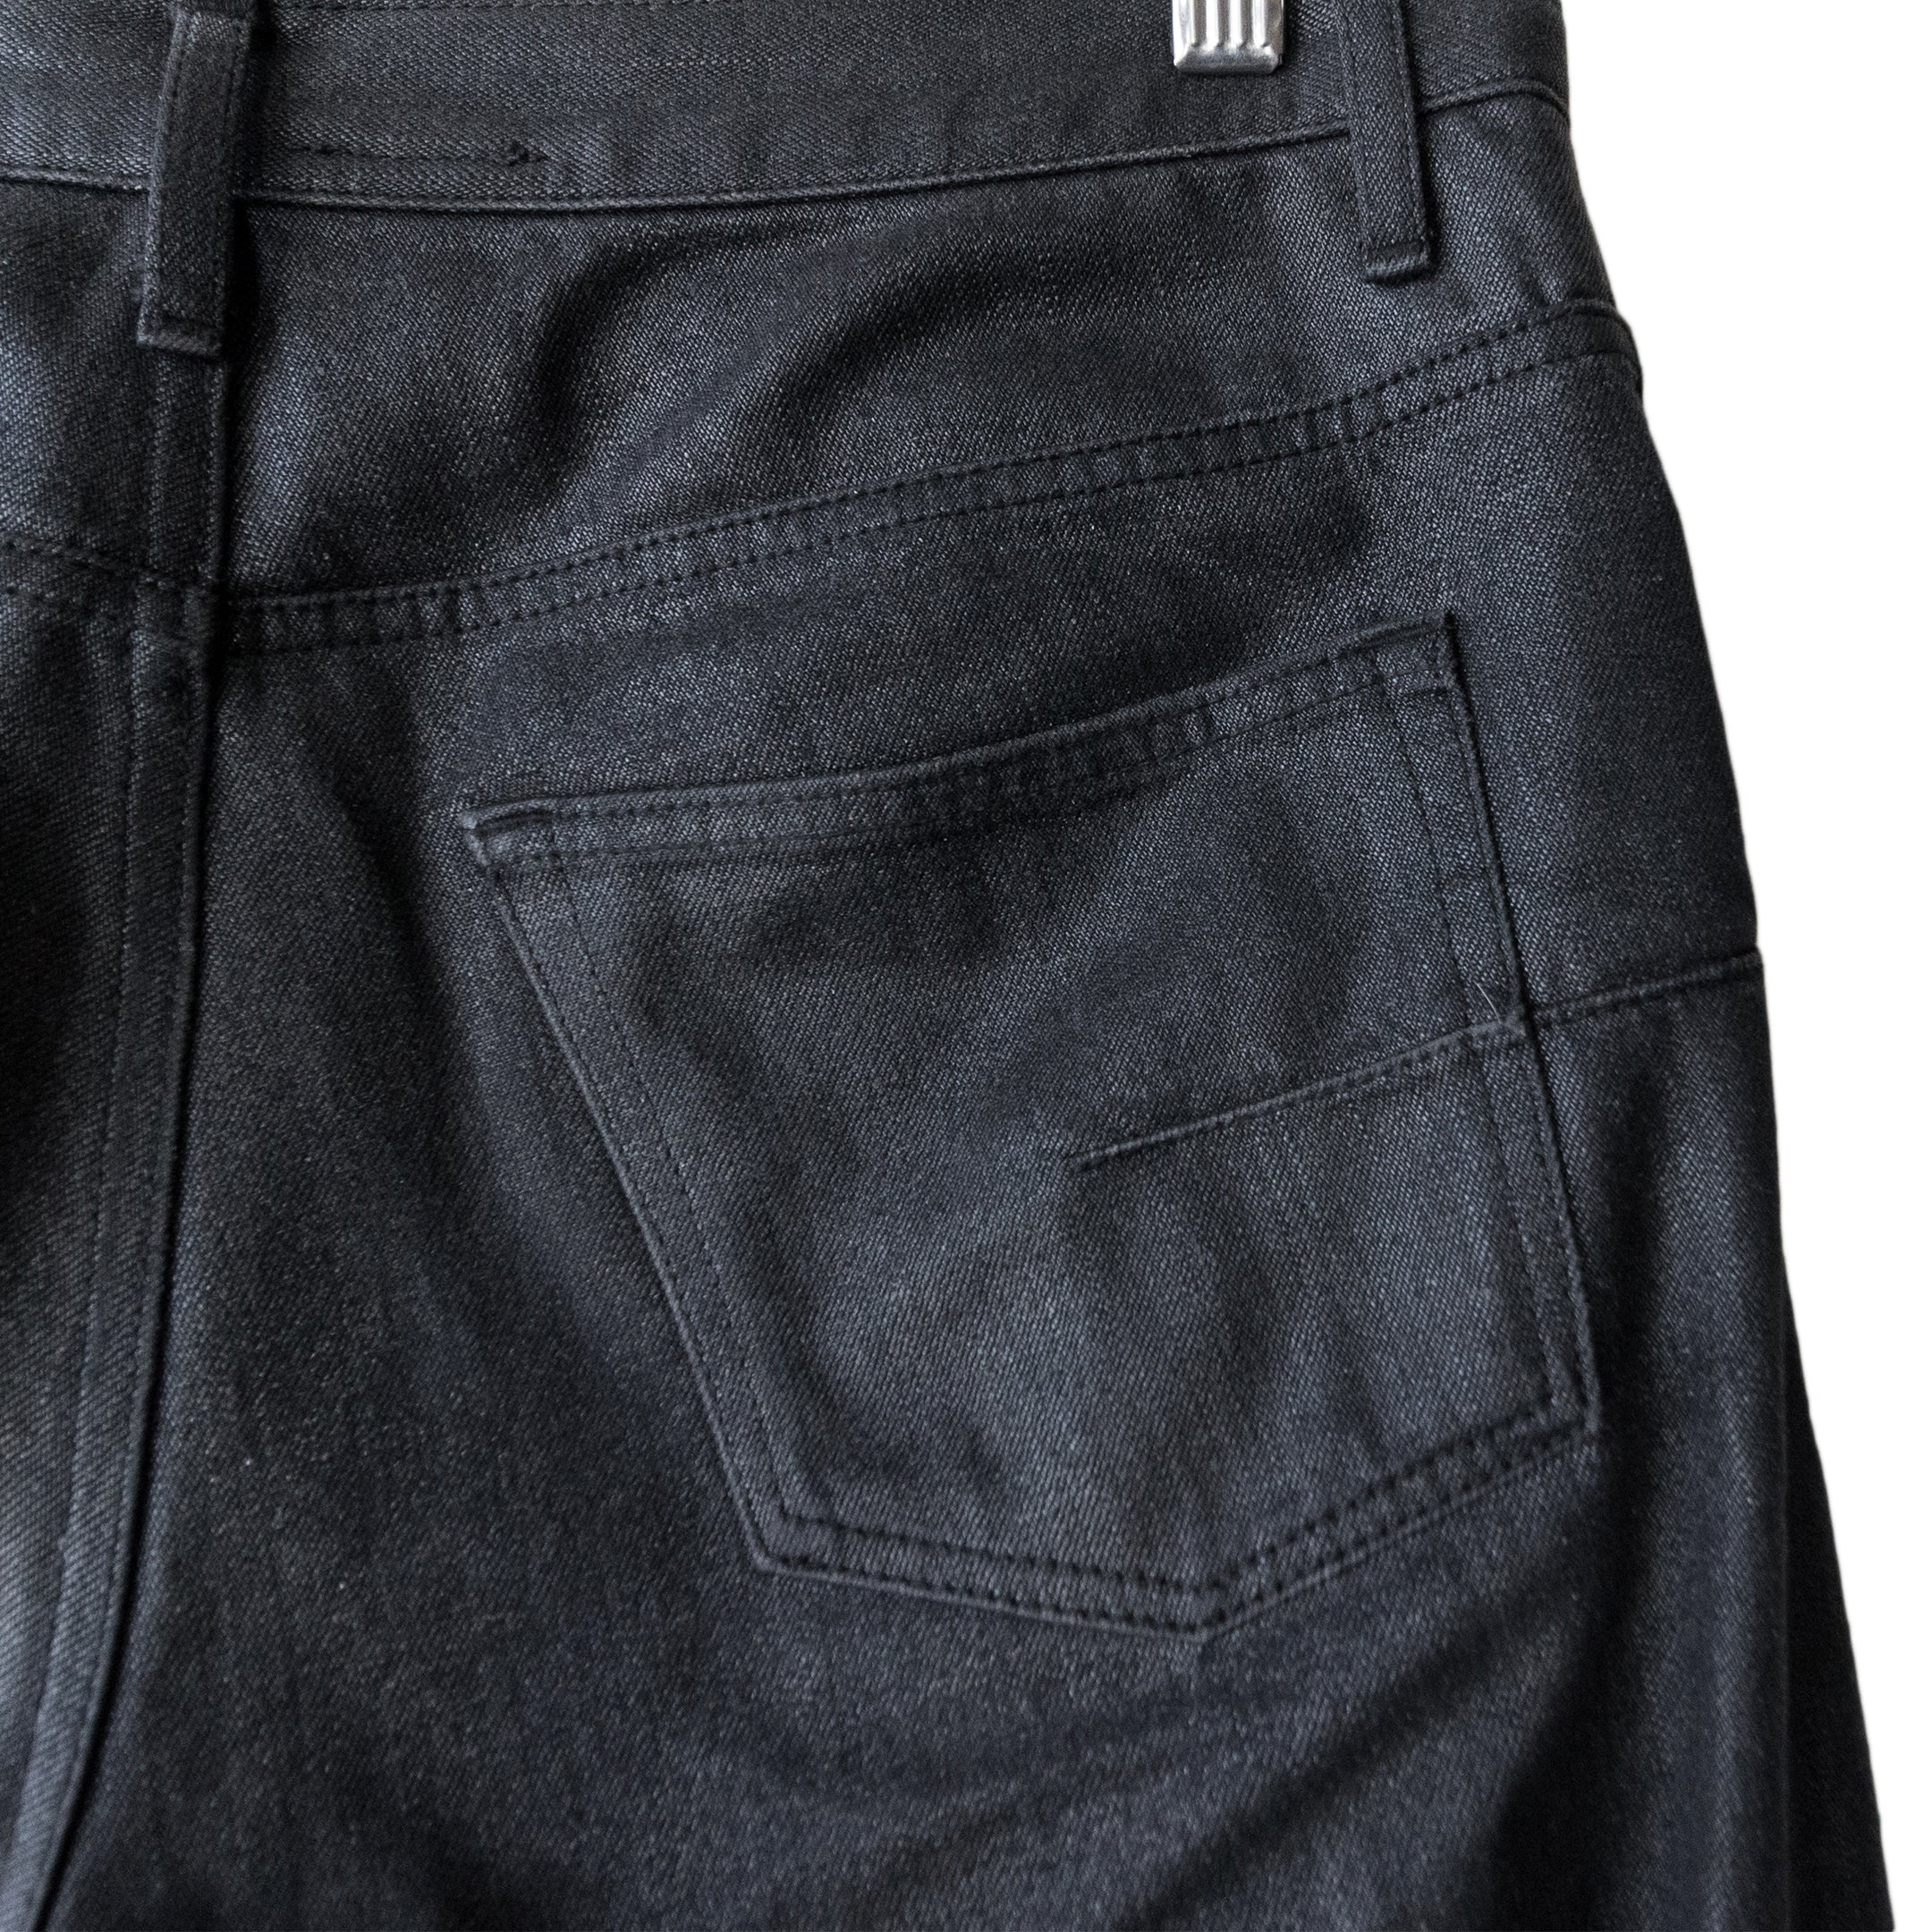 DE177 Oil Black Wax Denim Jeans - DOT Made